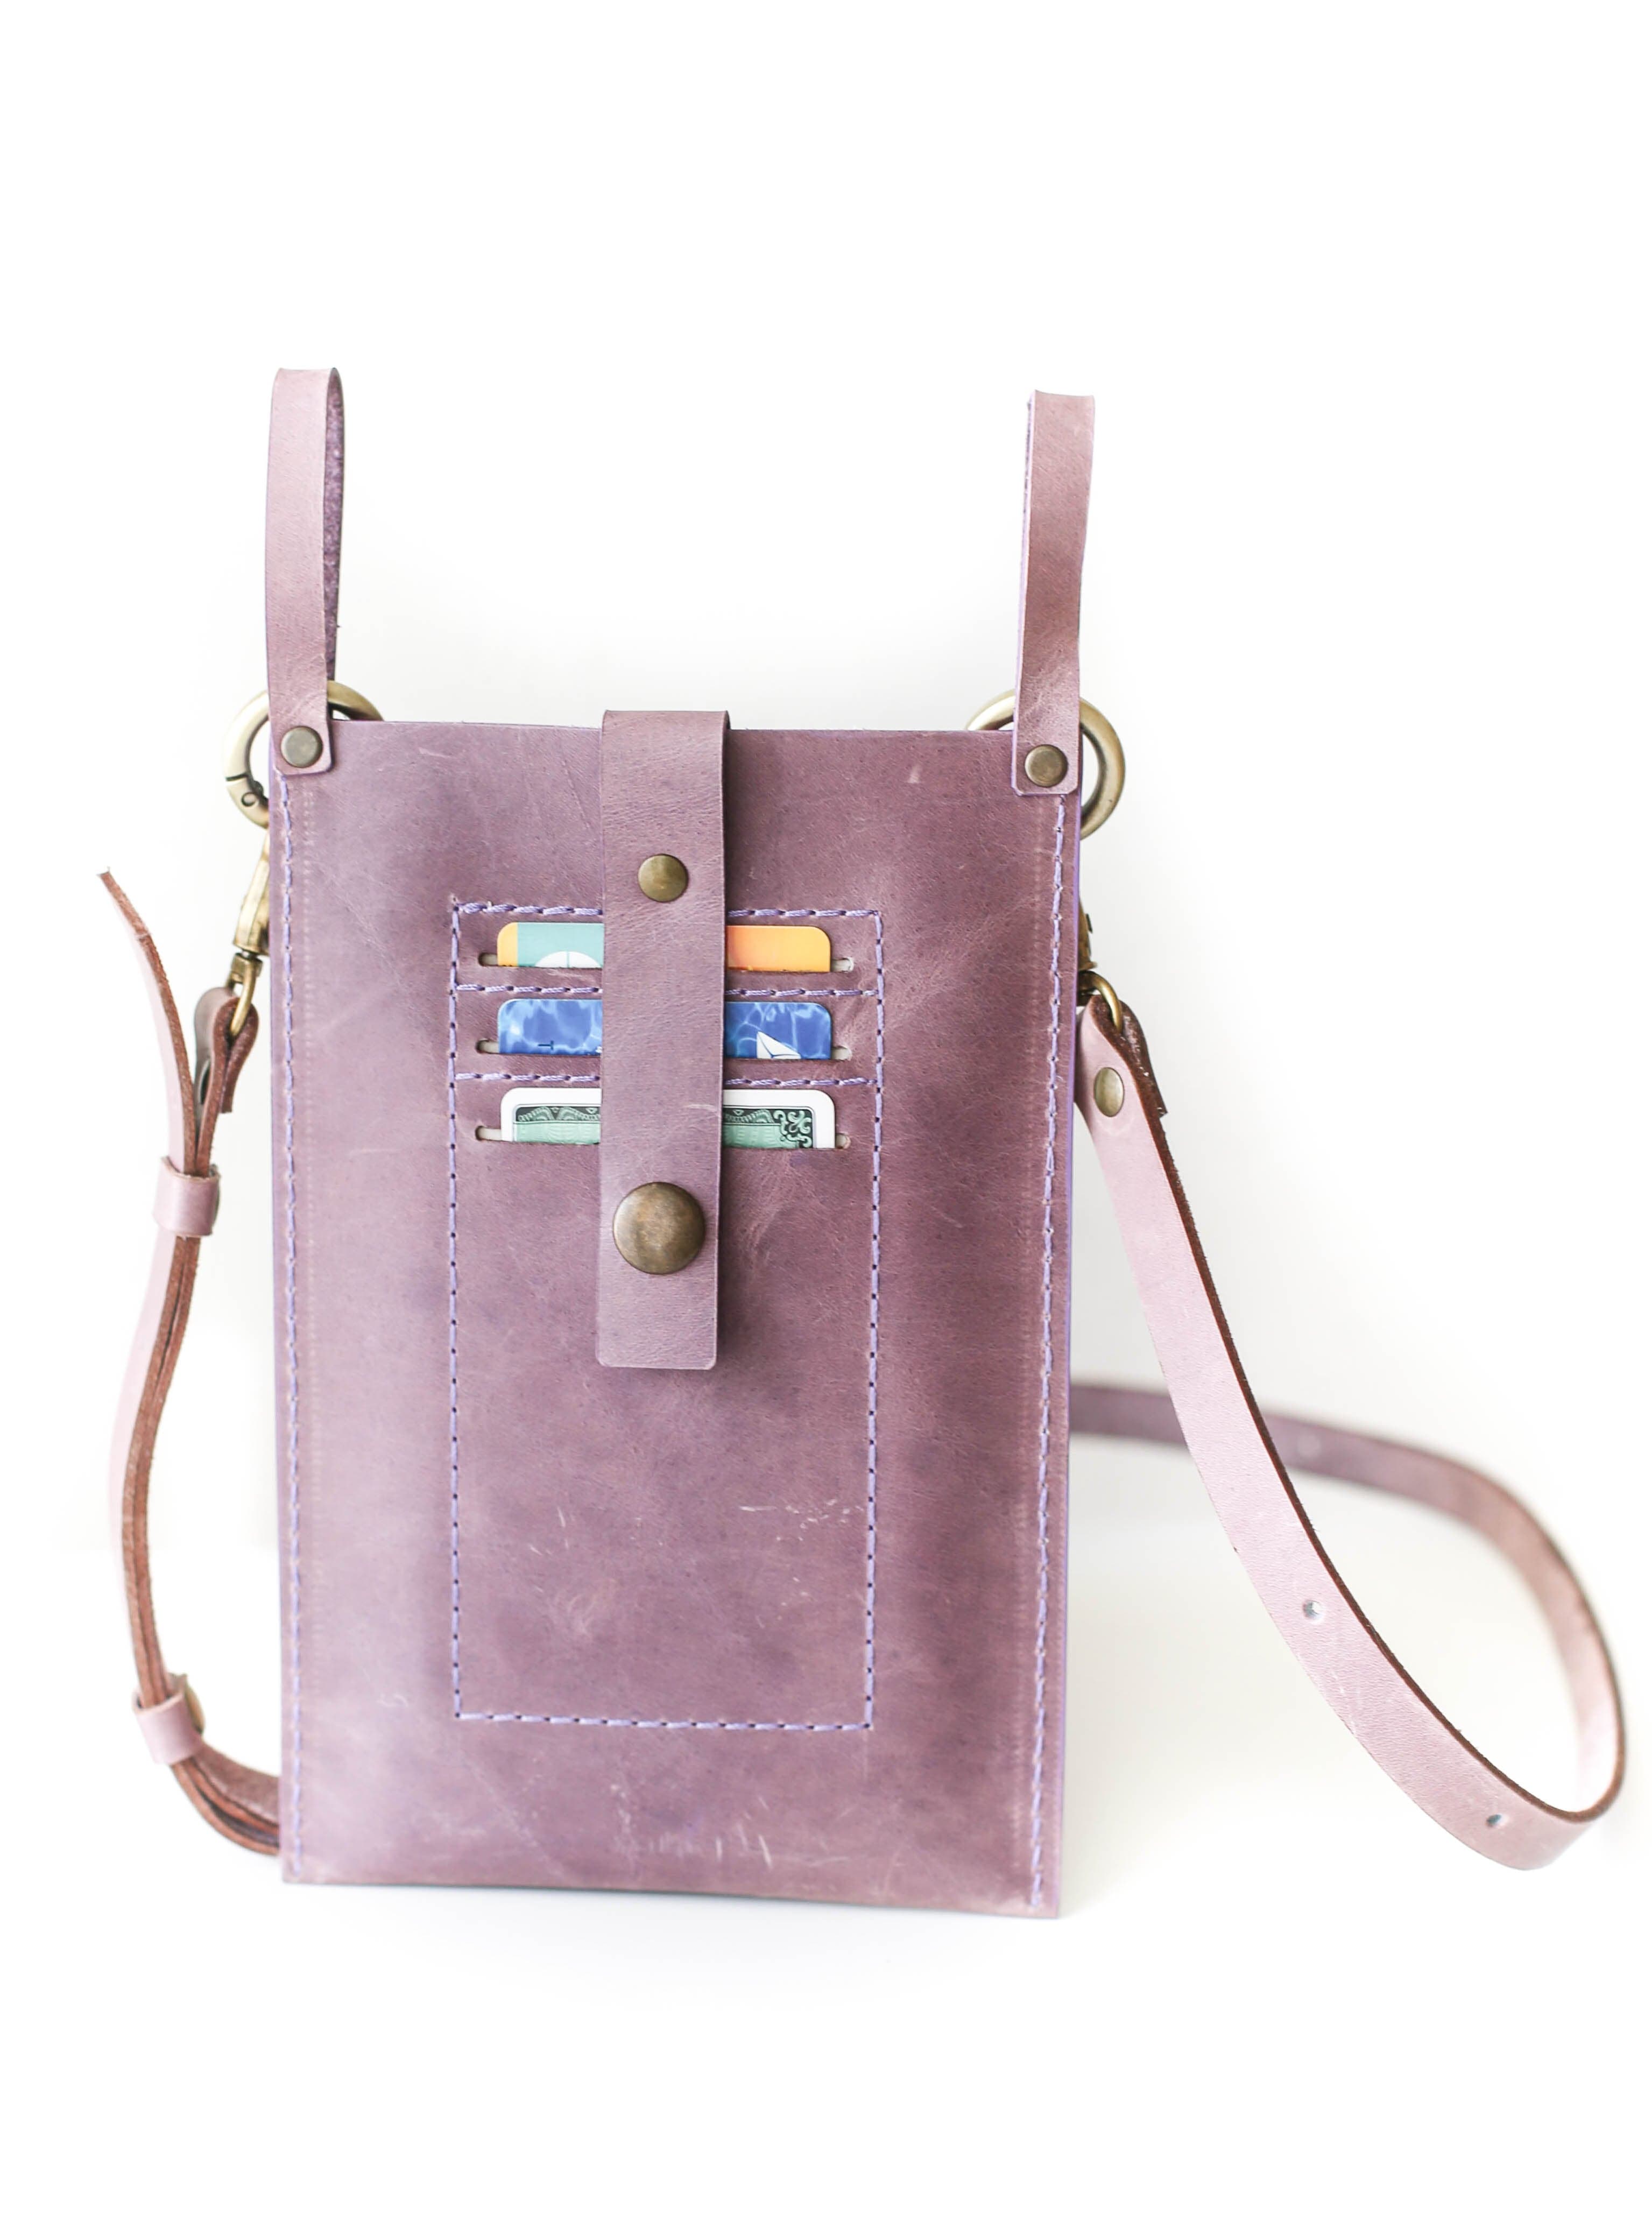 The Leather Cross Body Mobile Phone Bag – Scott-Samuel